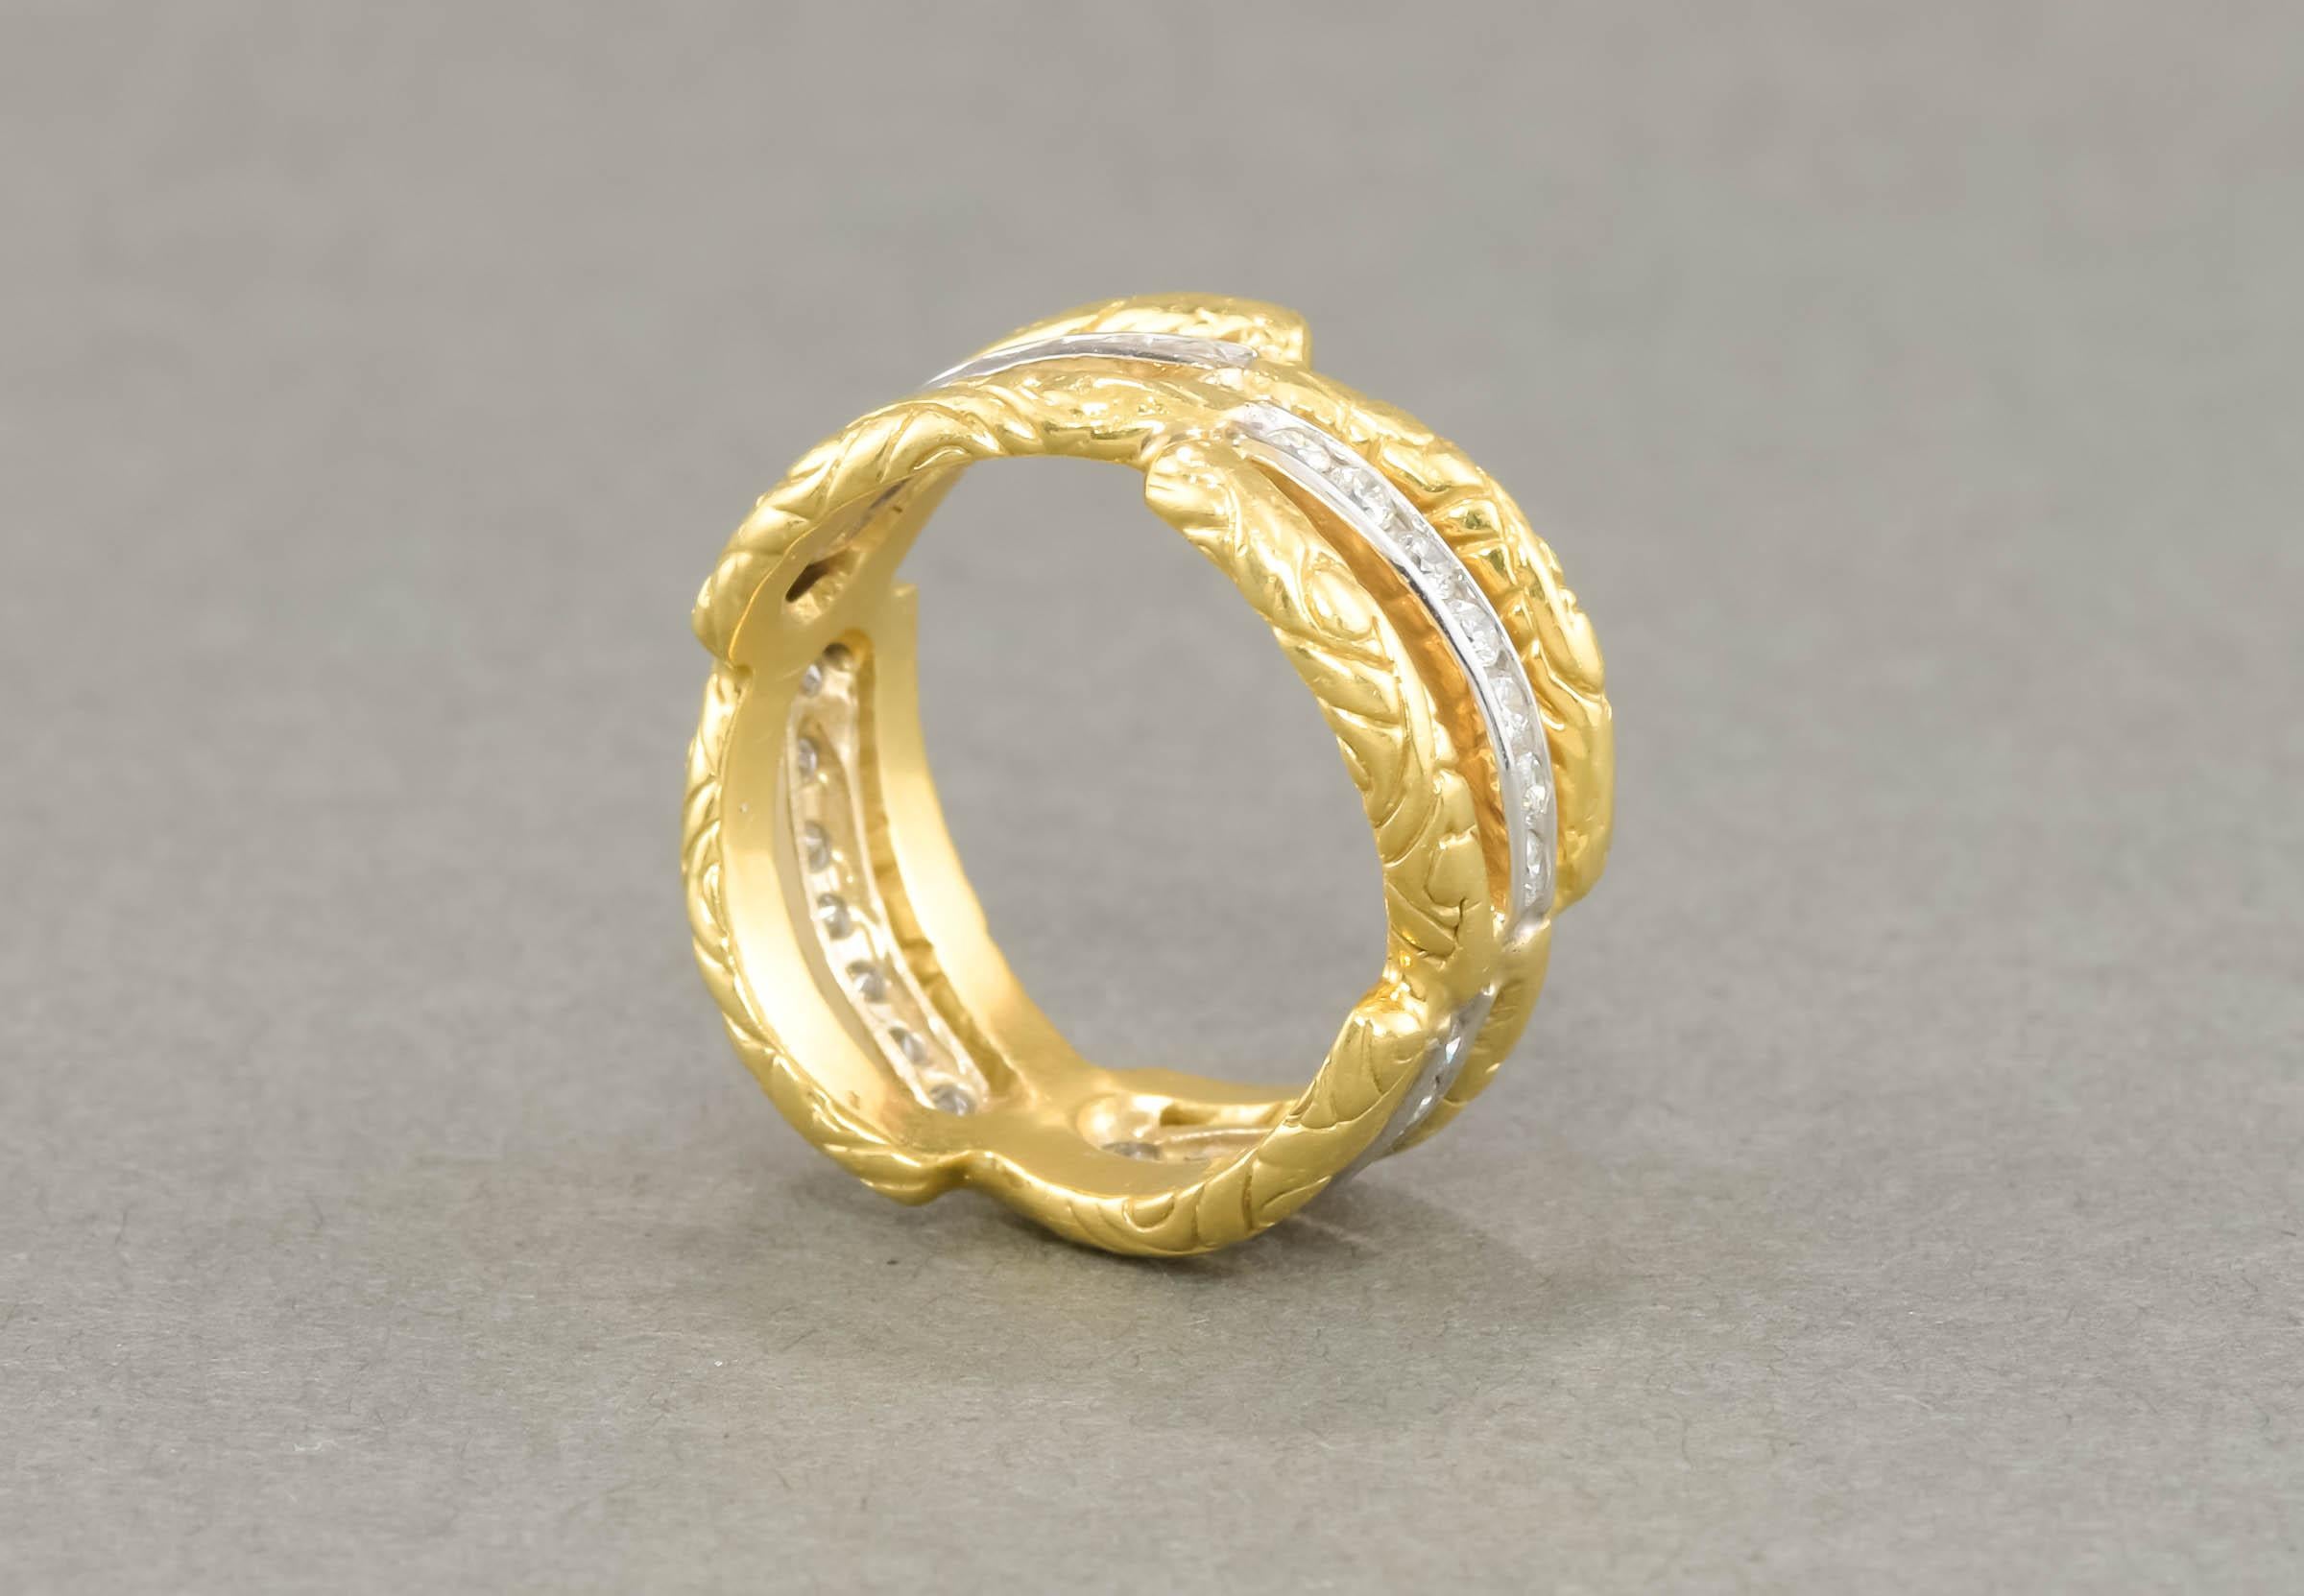 Magnifique et substantiel sur la main, ce large bracelet d'éternité présente de jolis détails ainsi que des diamants de qualité.

Réalisé en or jaune et en or blanc 18 carats, le bracelet présente un étonnant motif de vagues décalées, avec des